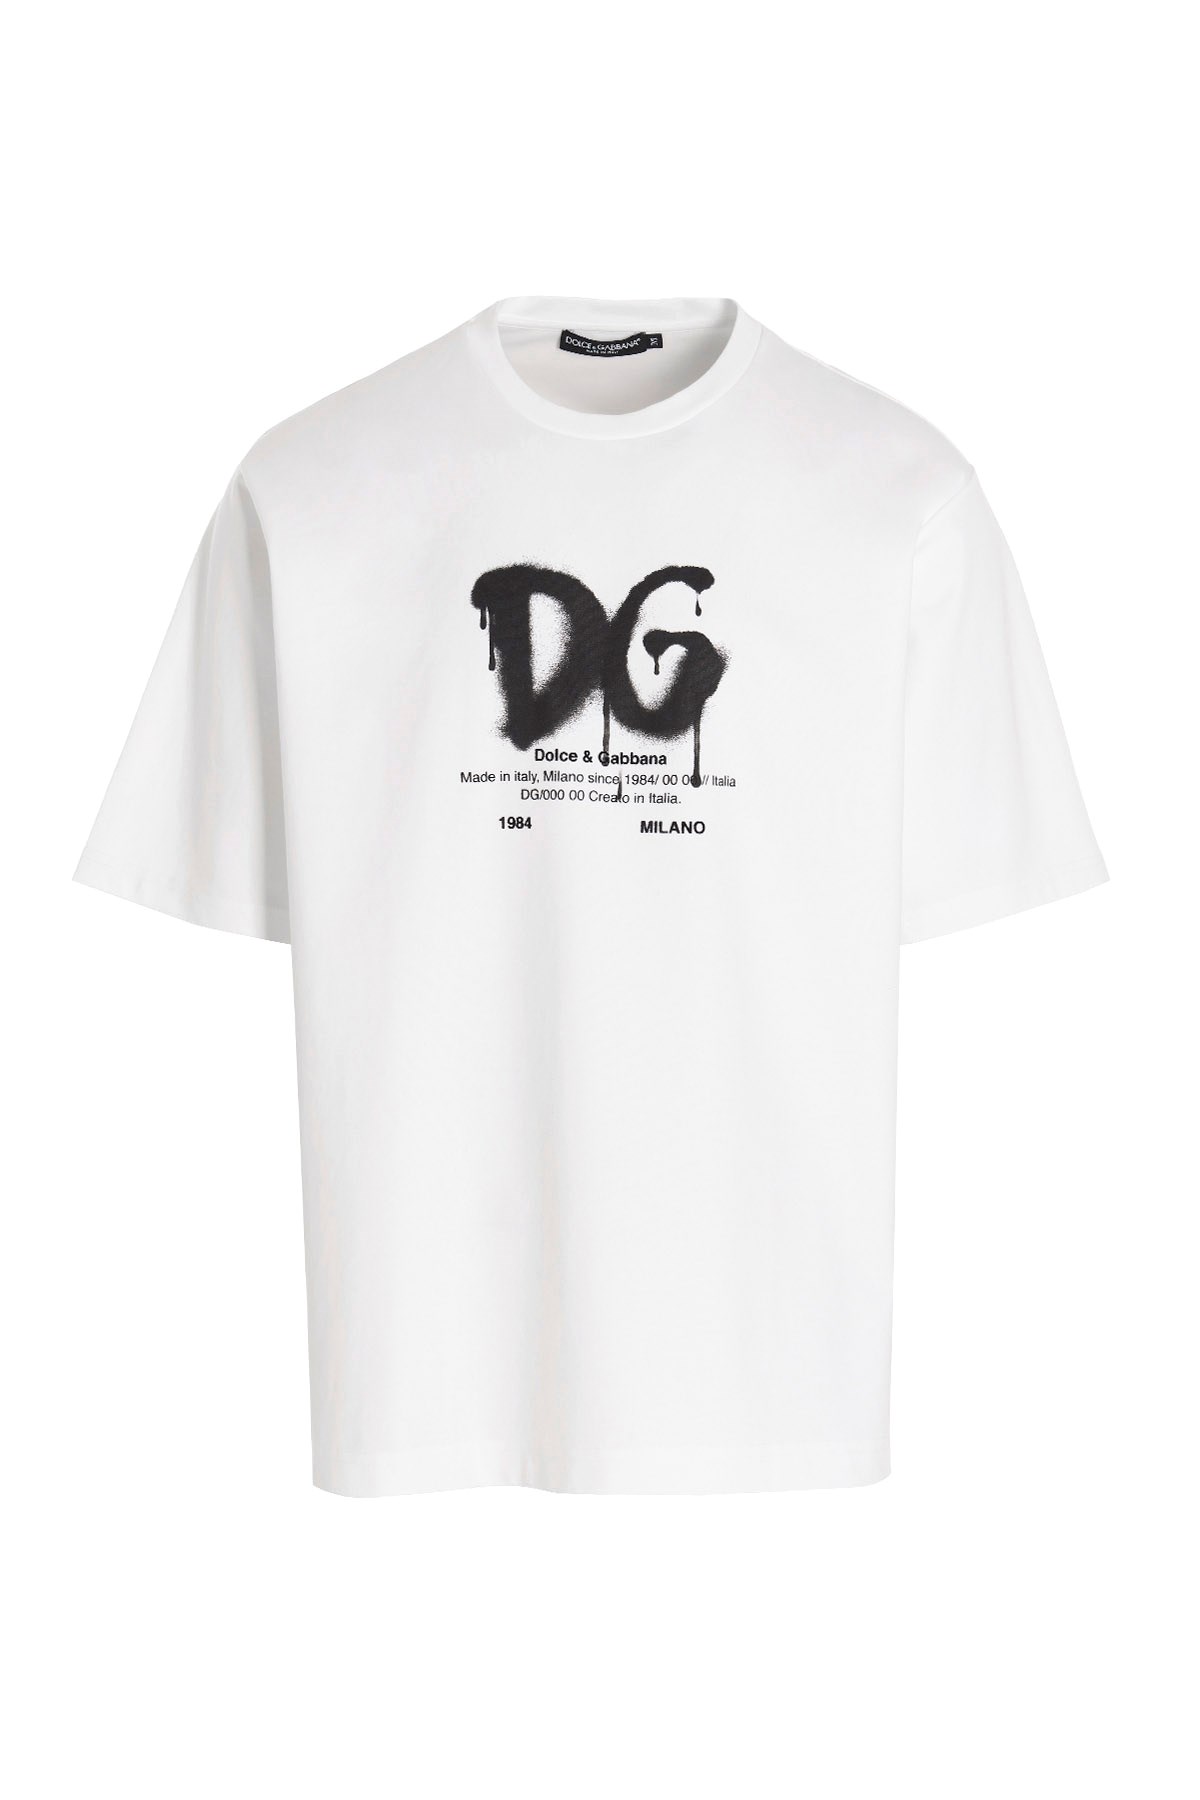 DOLCE & GABBANA T-Shirt 'Dna'